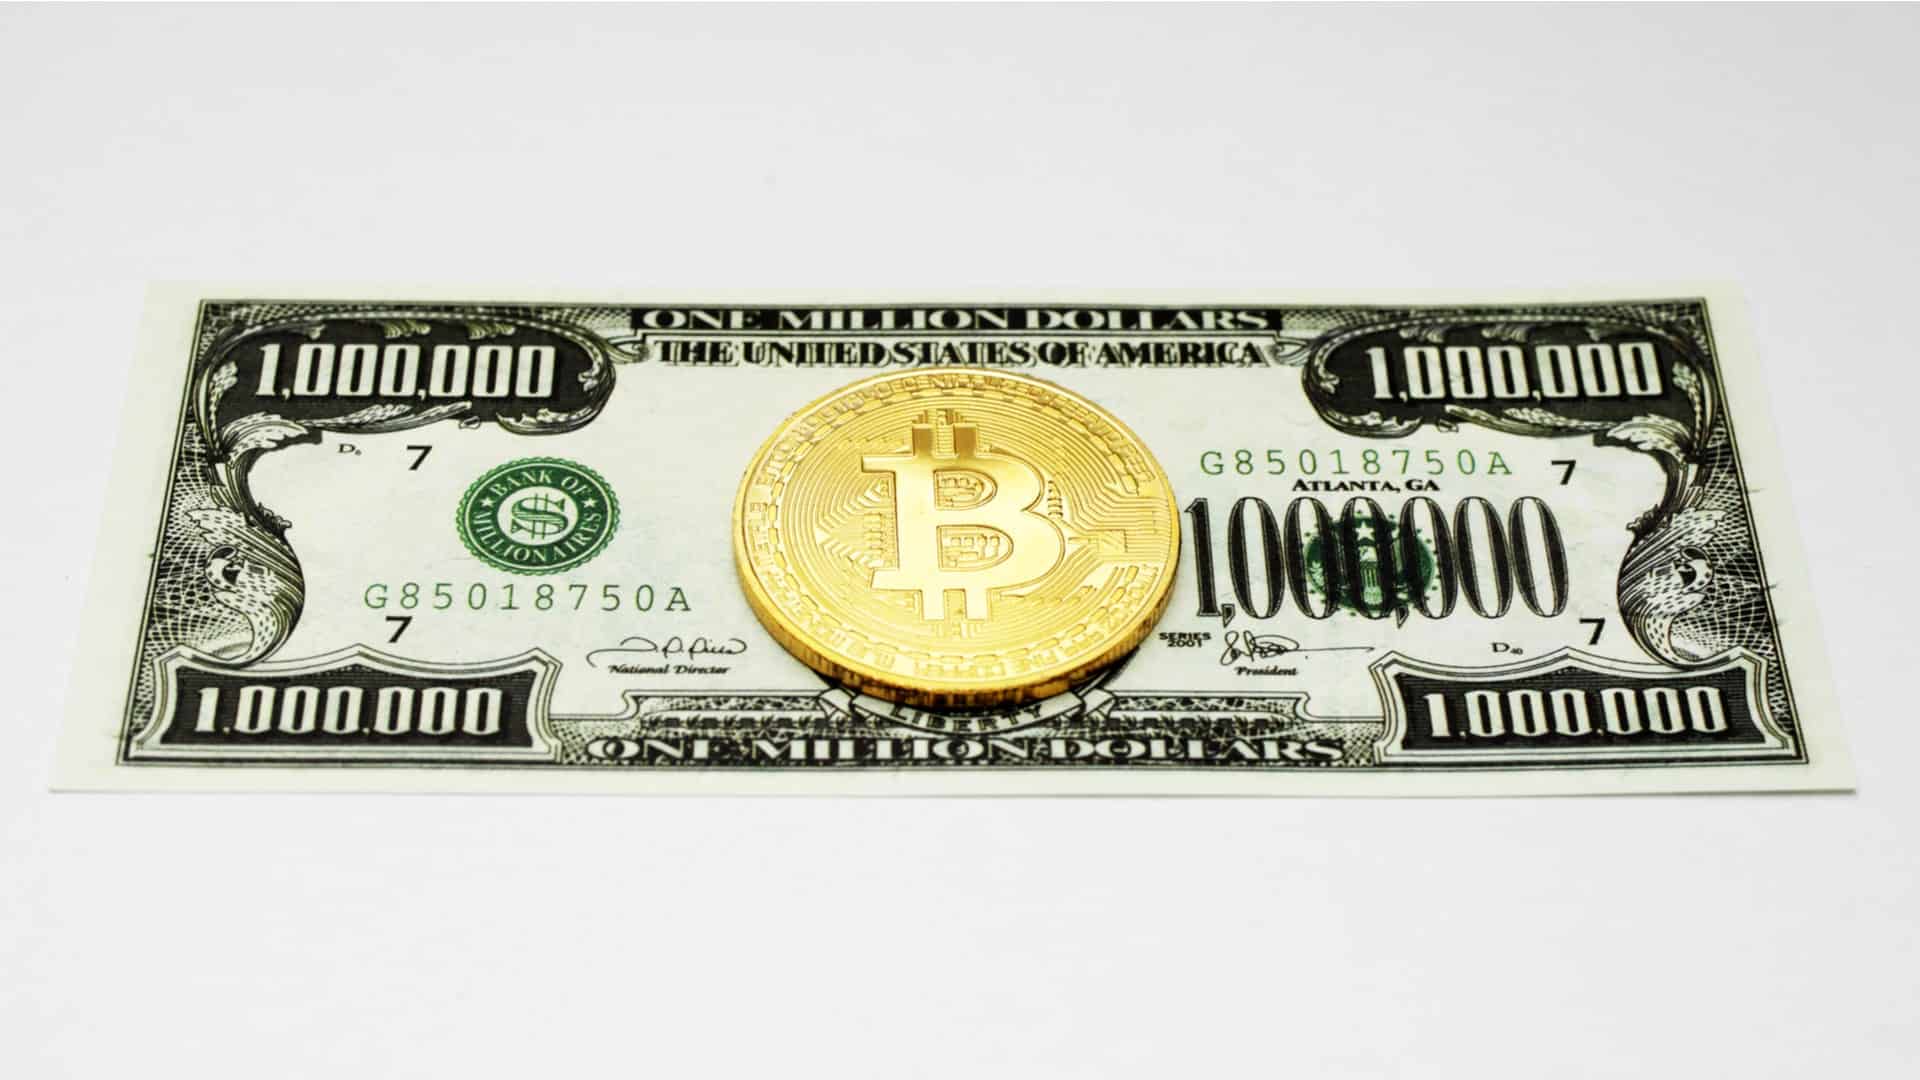 Dostane sa Bitcoin na jeden milión dolárov? Sledujte online graf.